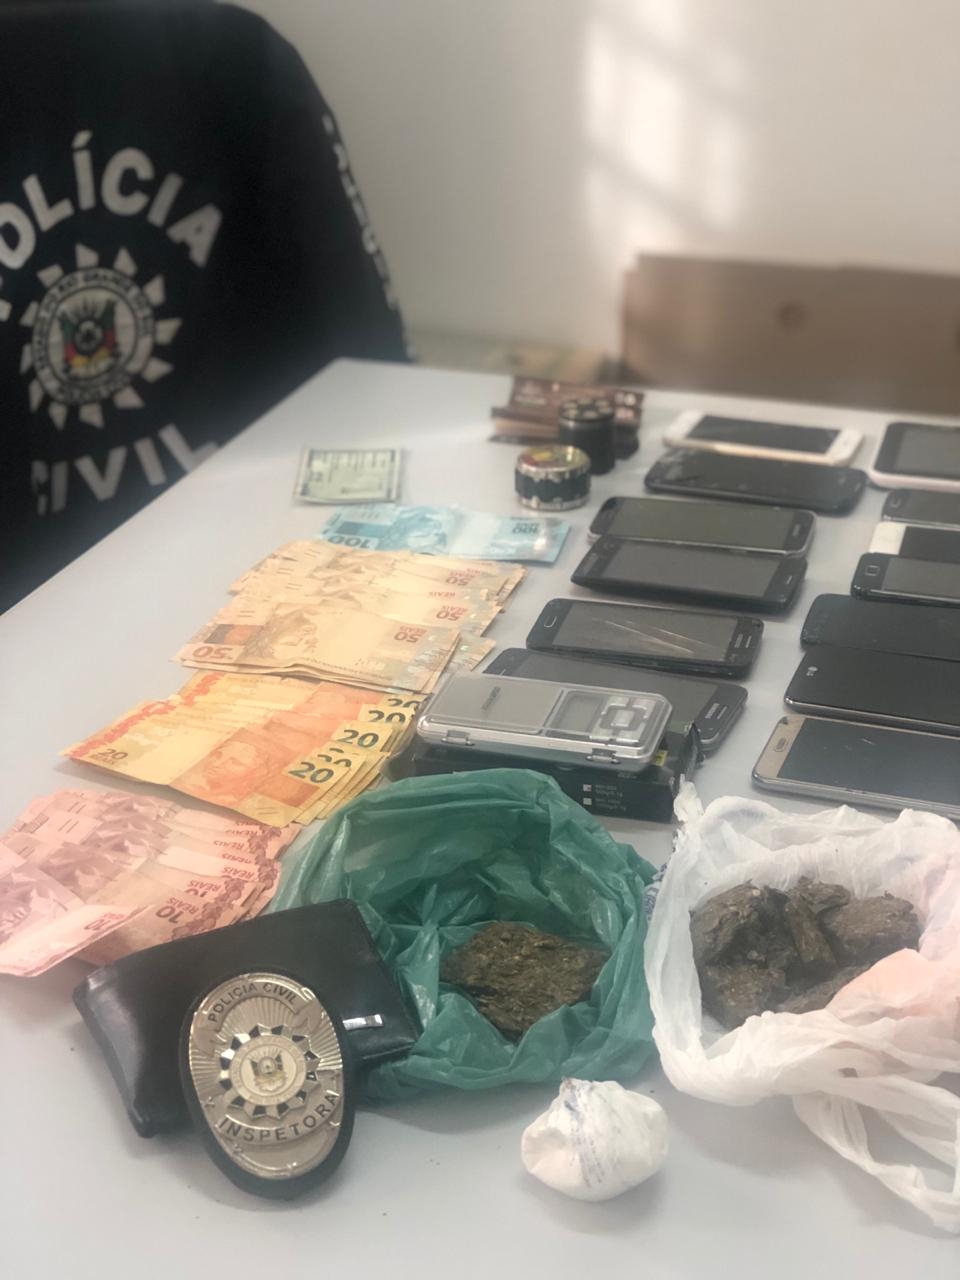 Drogas e dinheiro foram encontrados na residência. - Polícia Civil/Divulgação